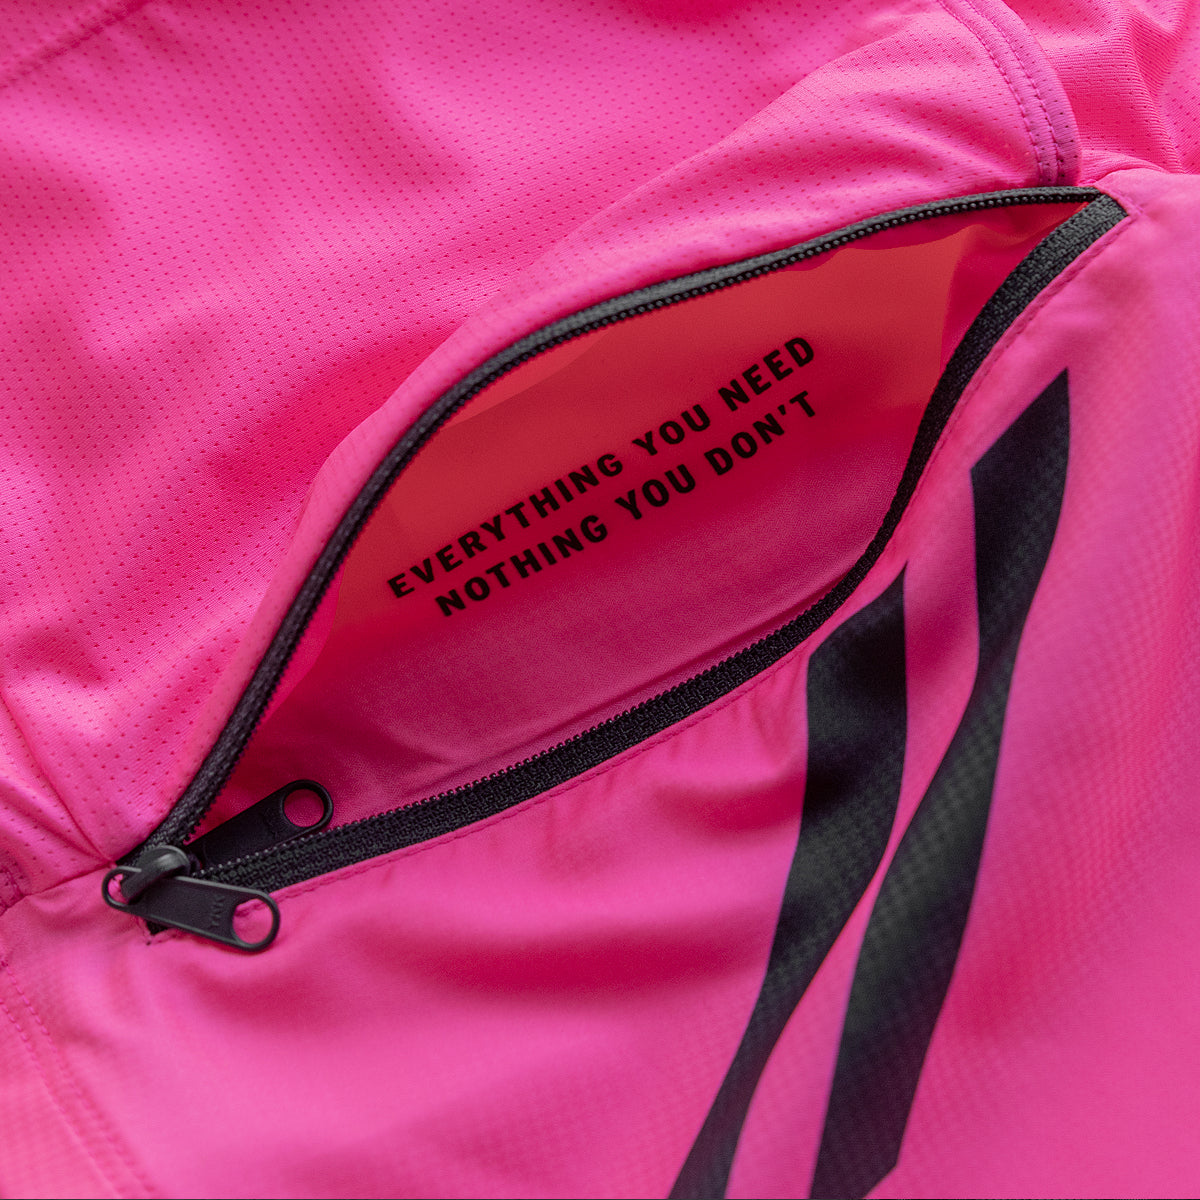 Standard Wind Vest (High Viz Pink)